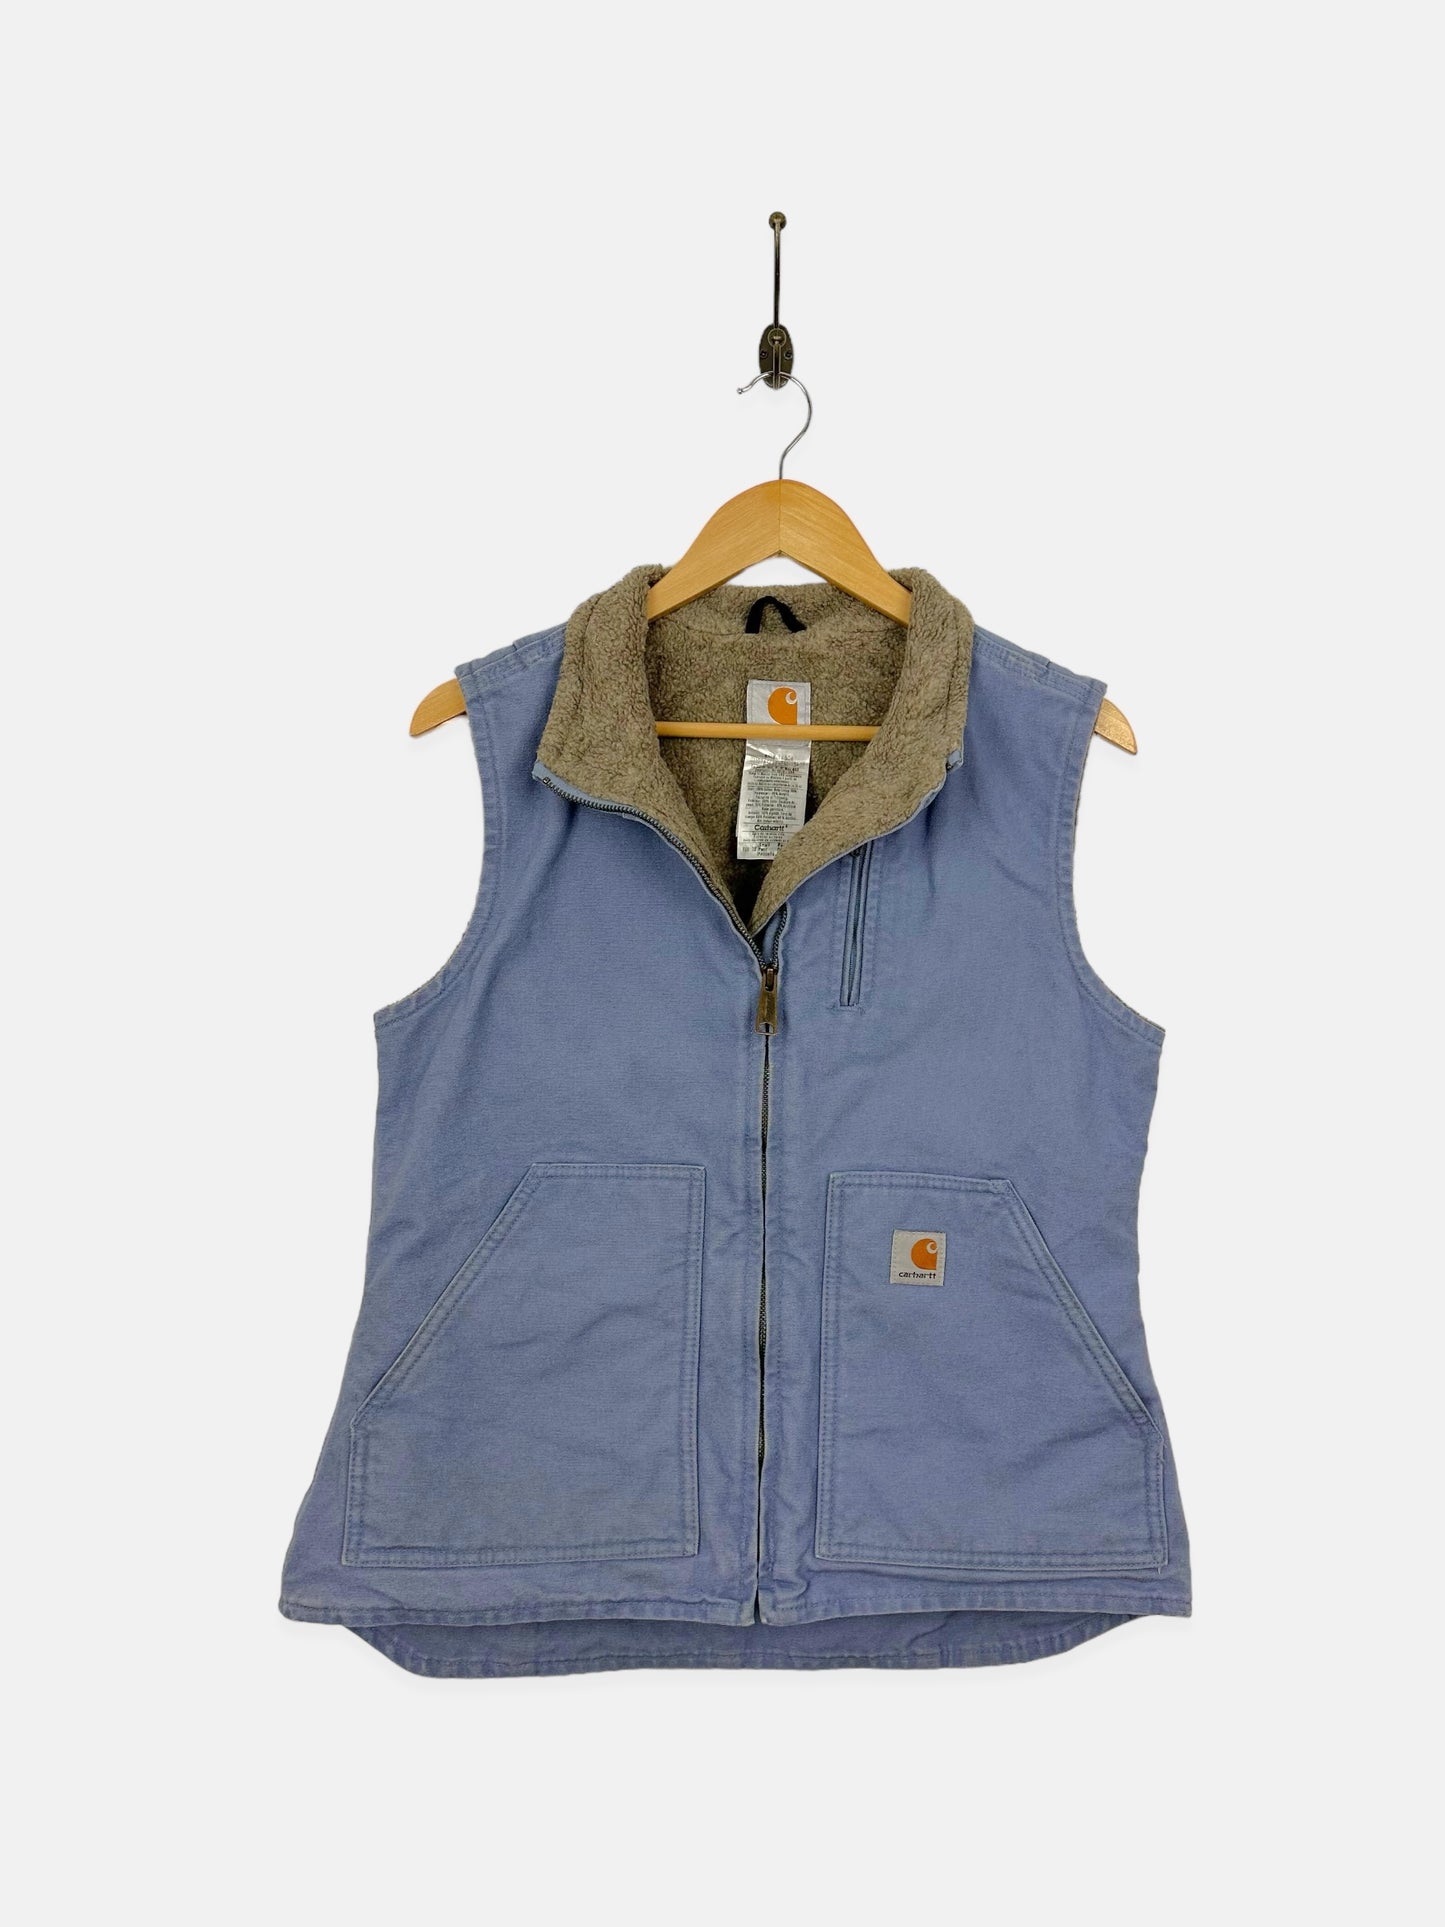 90's Carhartt Heavy Duty Vintage Sherpa Lined Vest Size 8-10